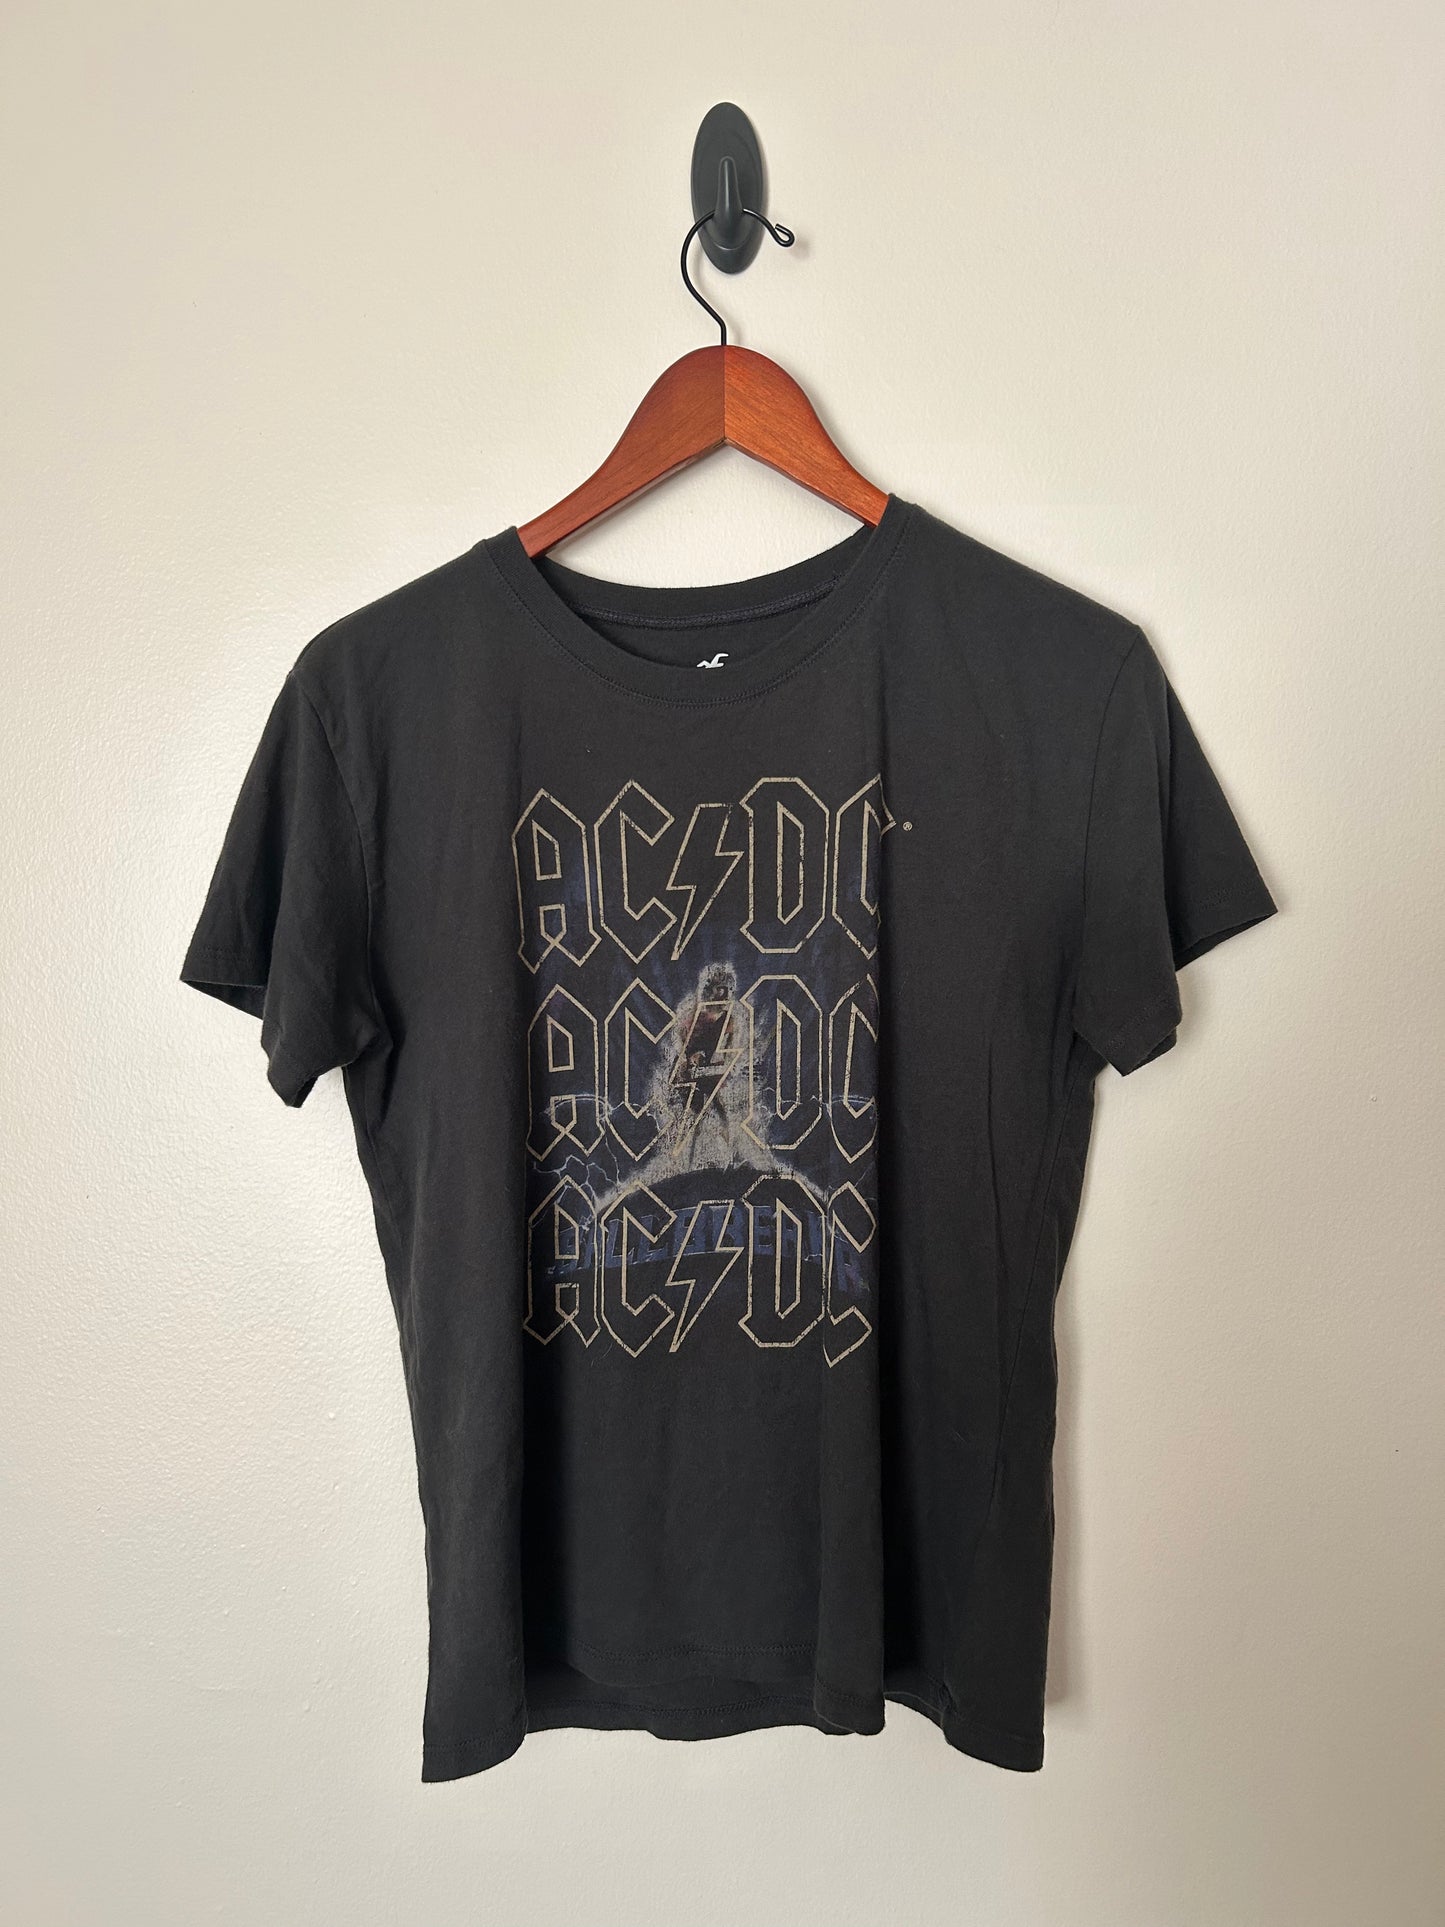 AC/DC Ballbreaker World Tour '96 T-Shirt - S